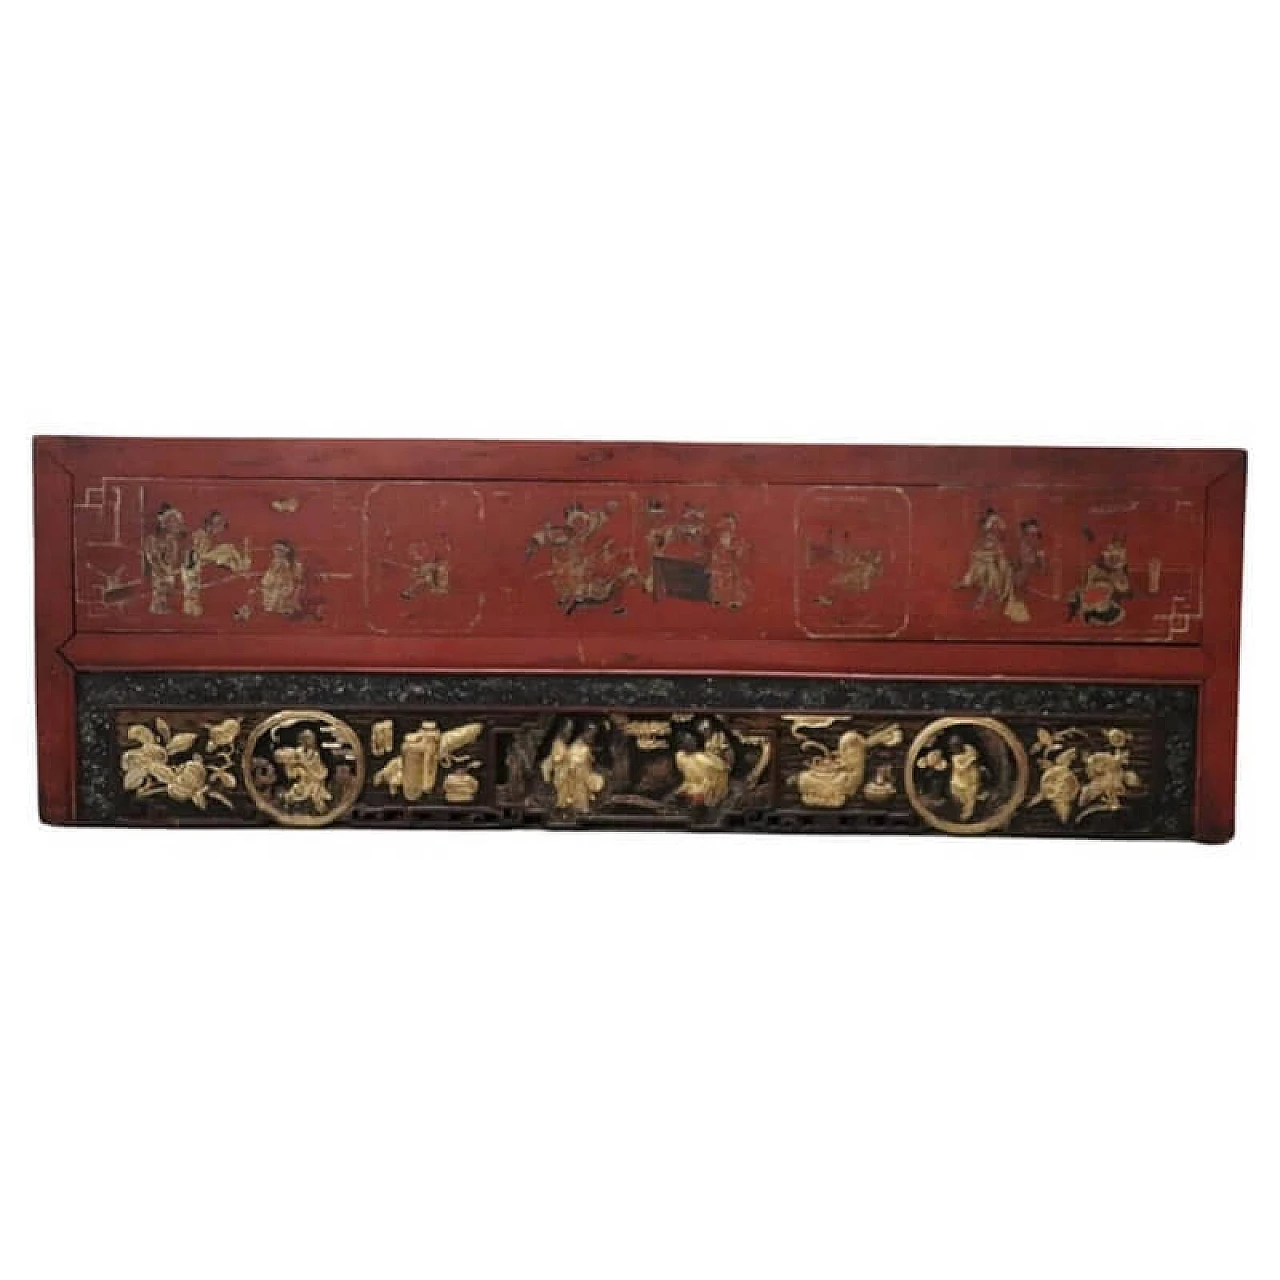 Pannello decorativo cinese in legno intagliato, metà '800 1